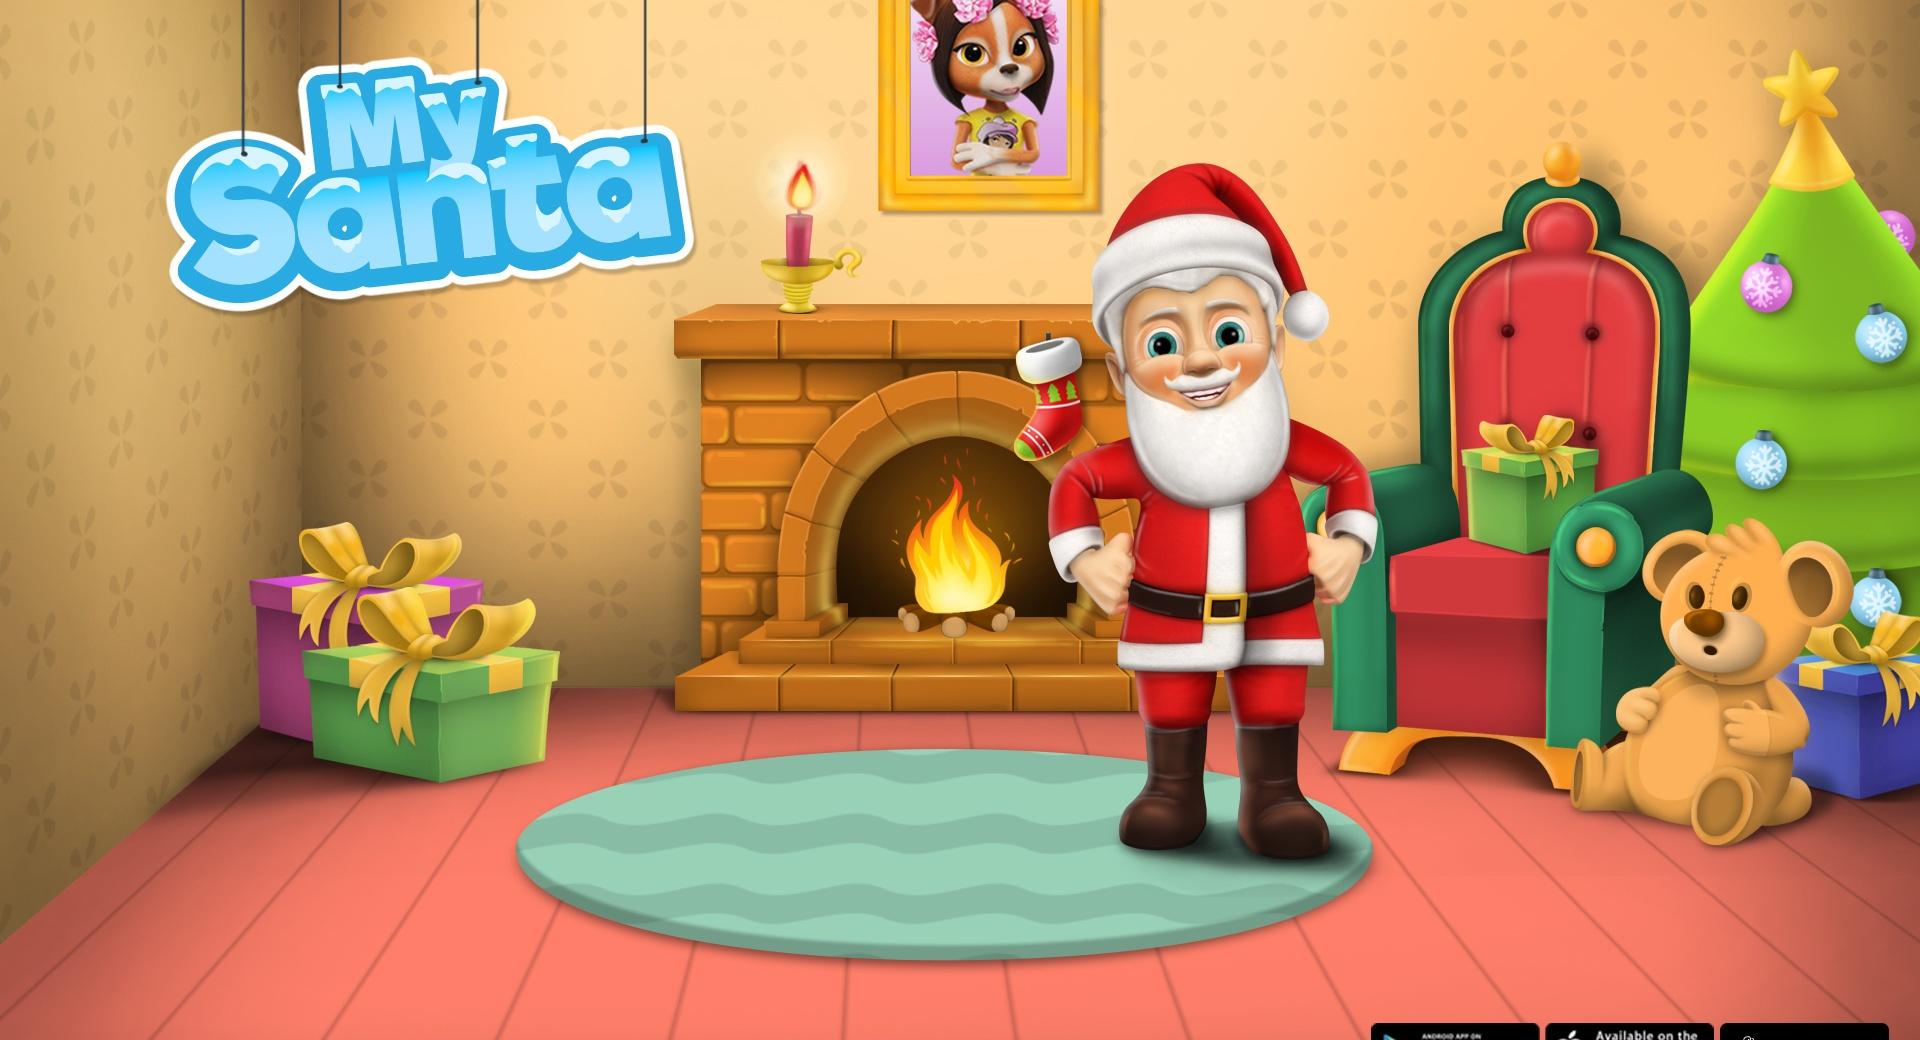 My Santa Claus - Santas Crib at 1024 x 1024 iPad size wallpapers HD quality